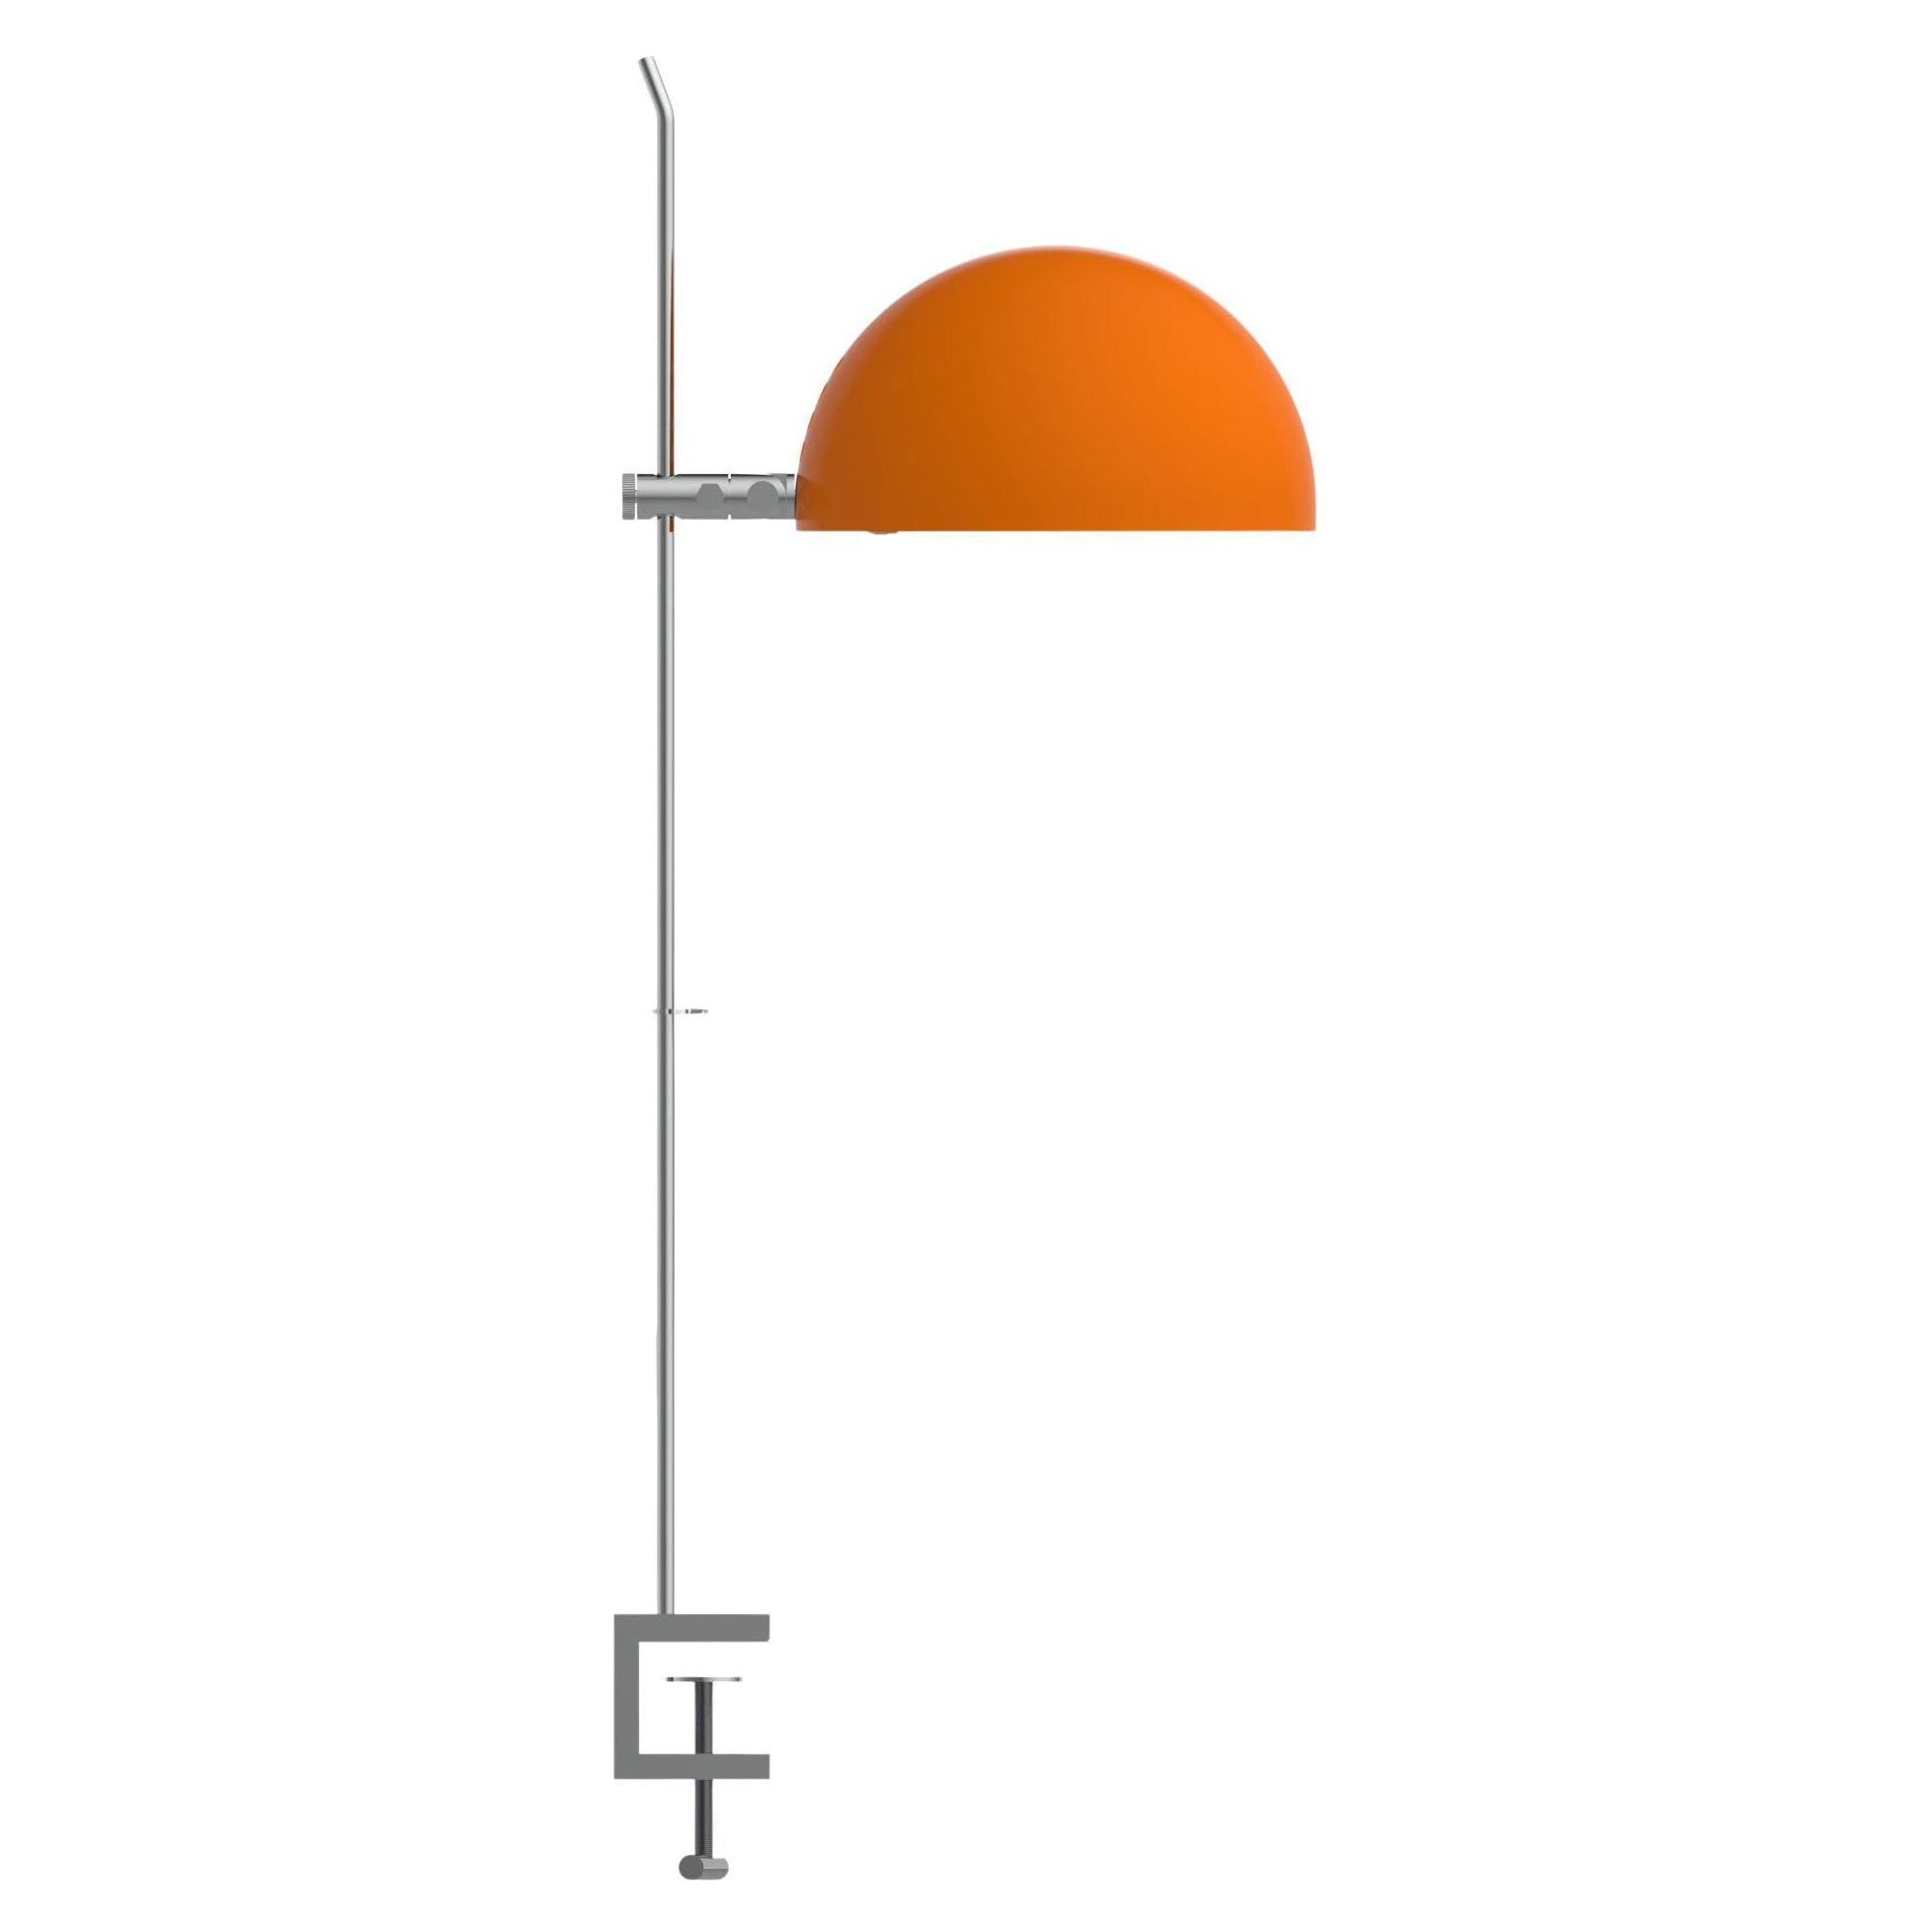 Alain Richard 'A22f' lampe à pampilles en orange pour Disderot